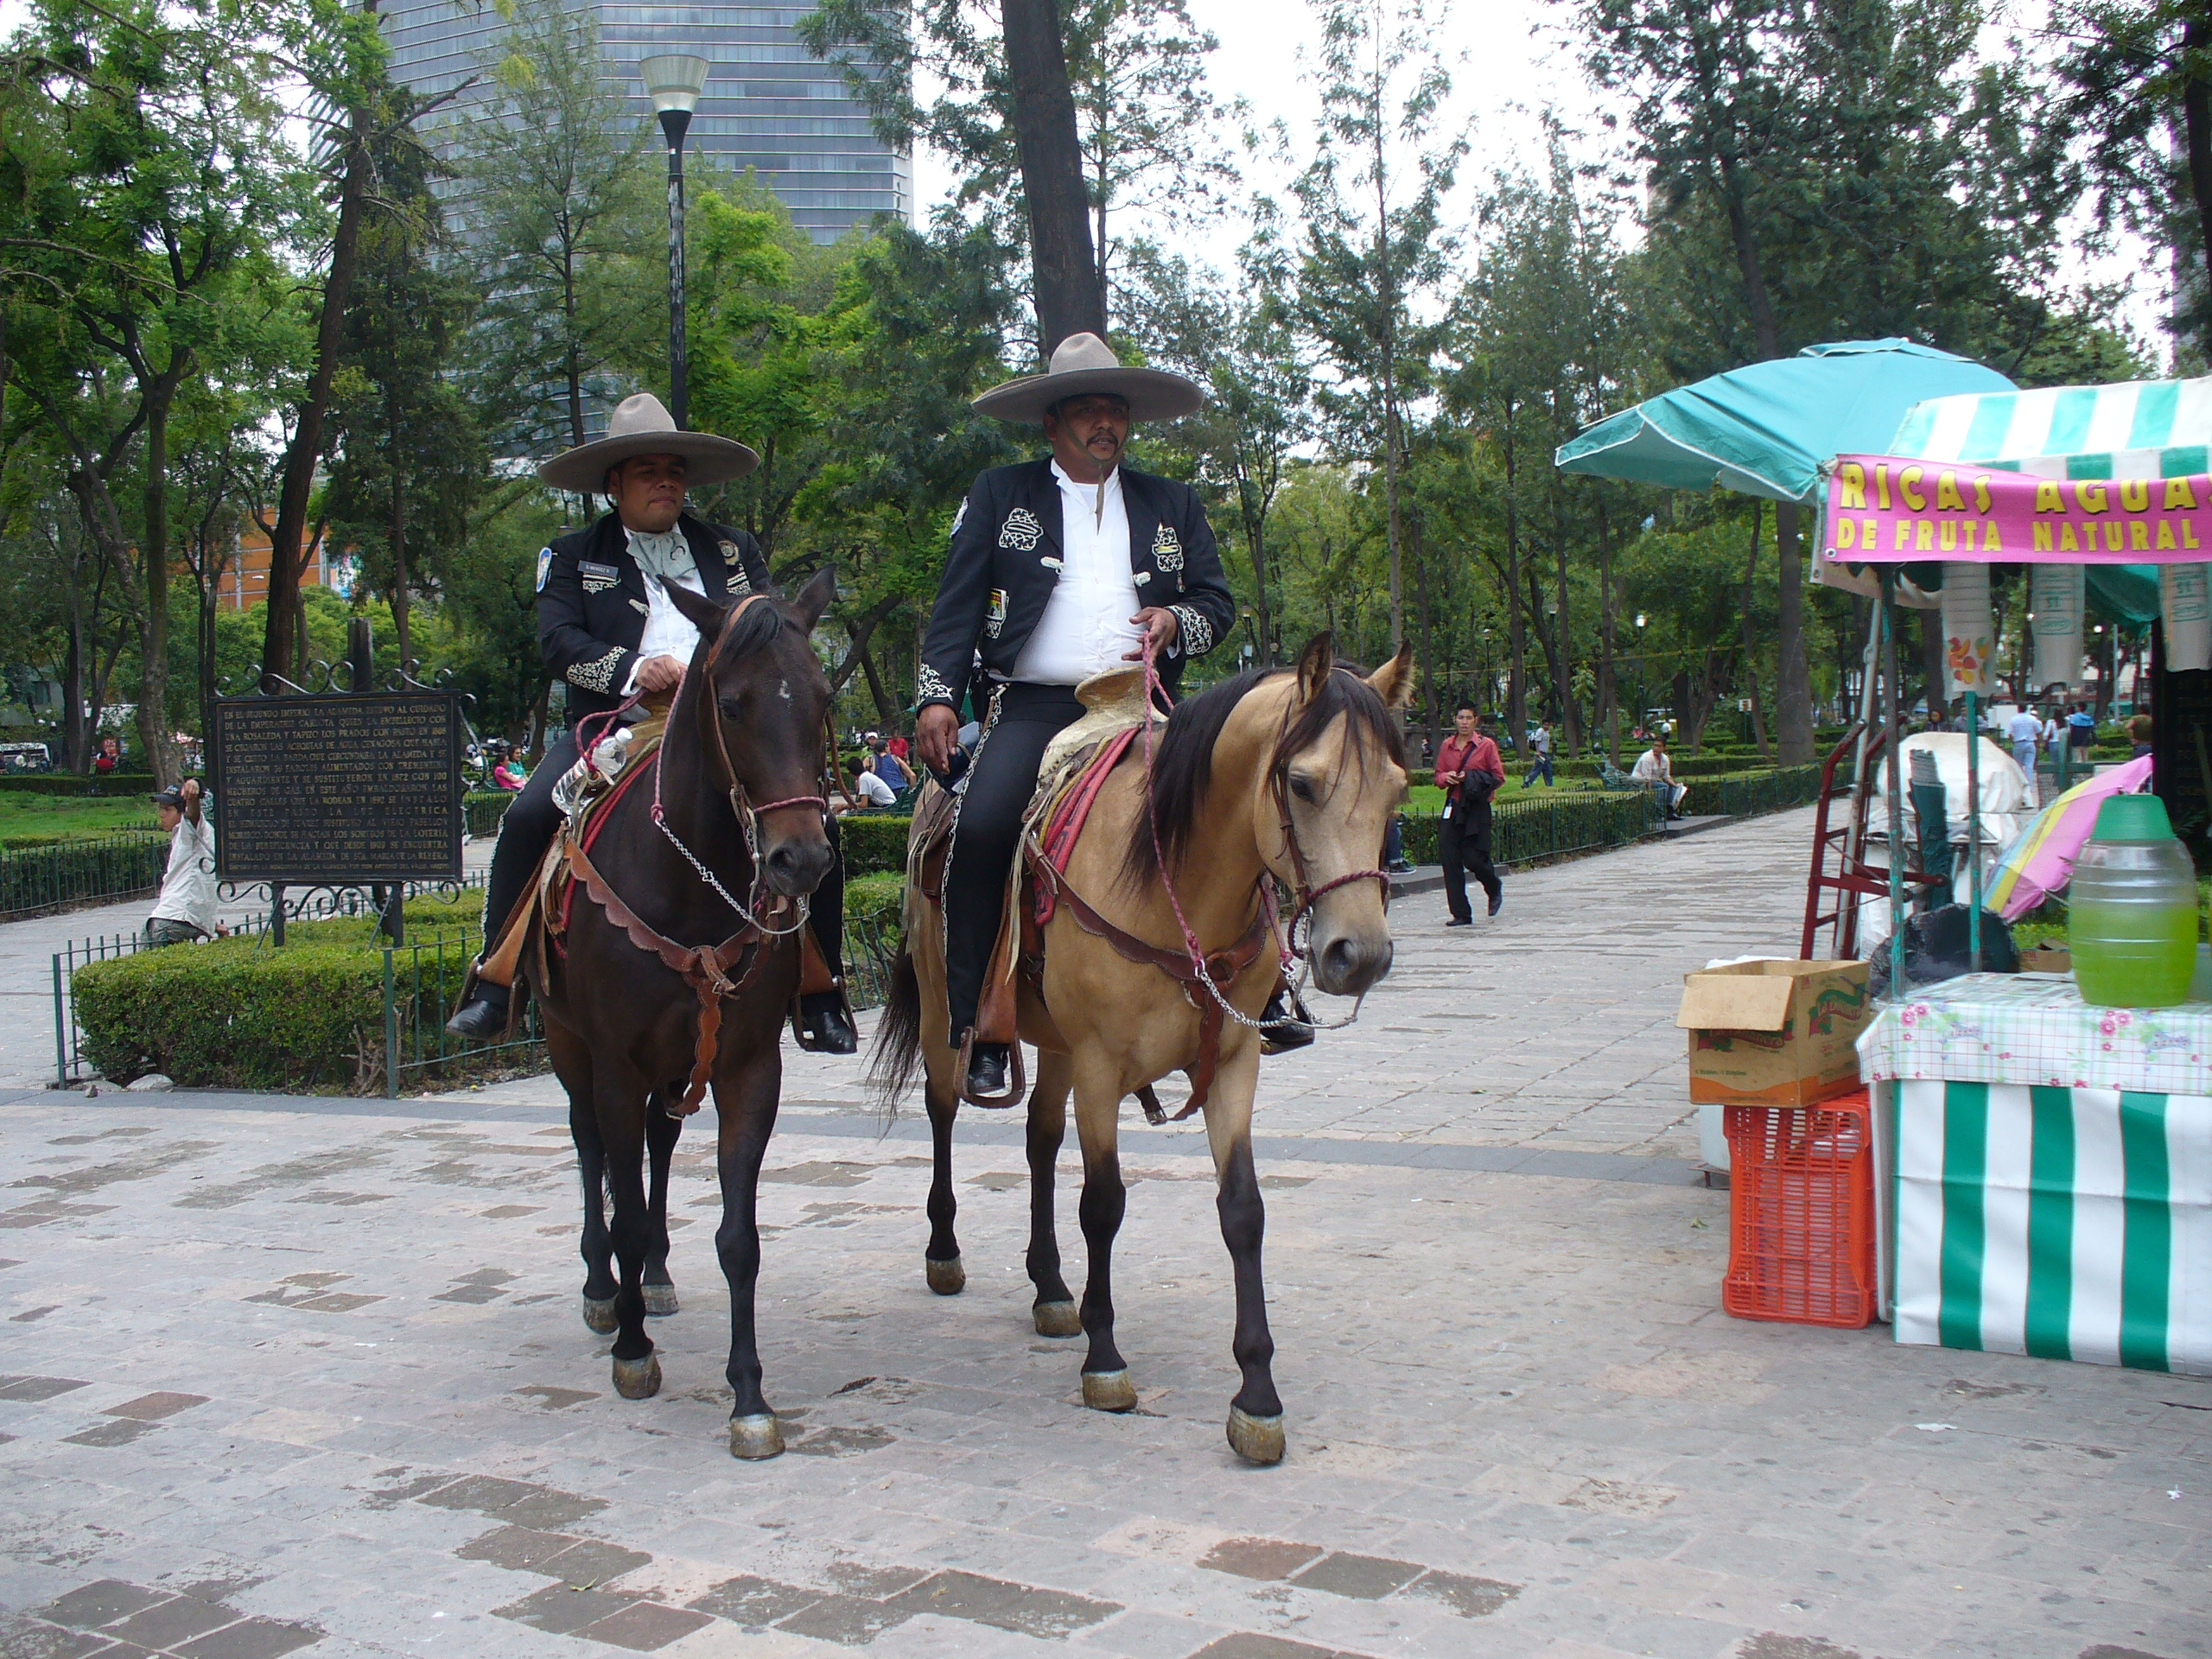 Dwóch policjantów na koniach patroluje miasto, ubrani są w wyszywane garnitury, na głowach mają szare sombrera